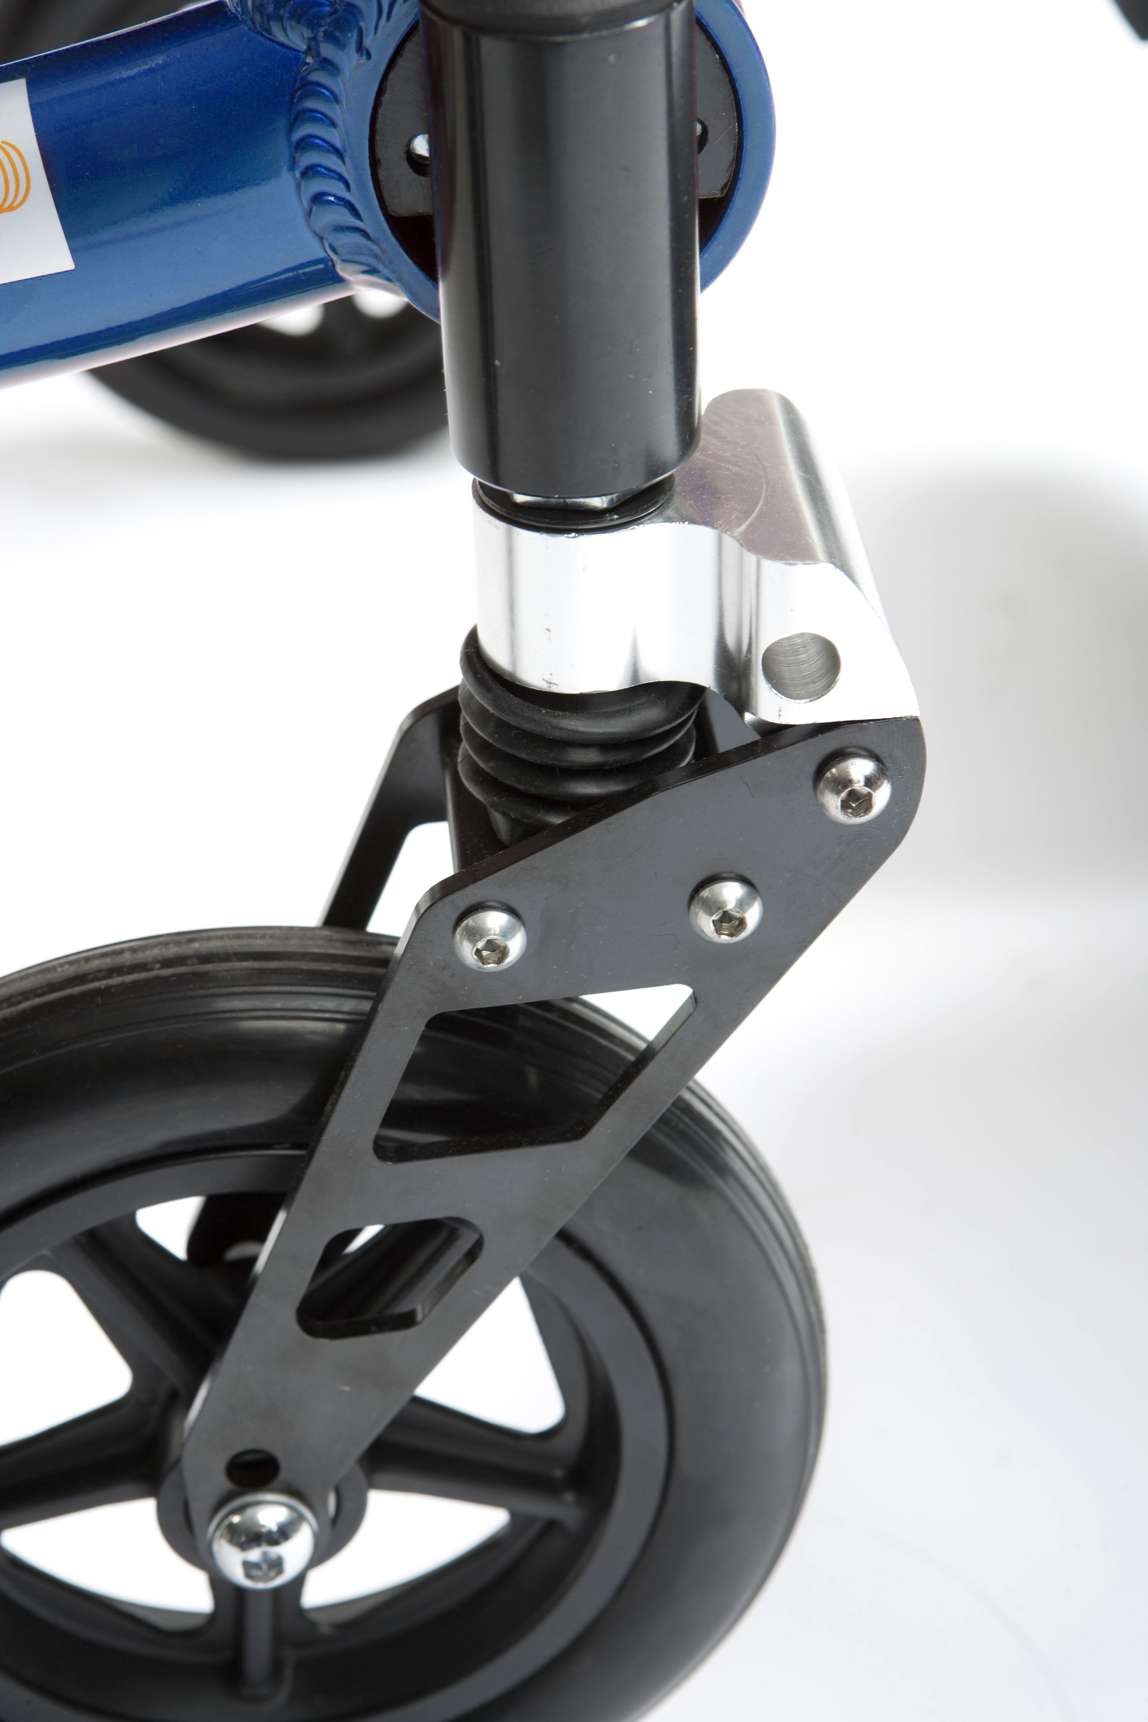 Drive K Chair Wheelchair